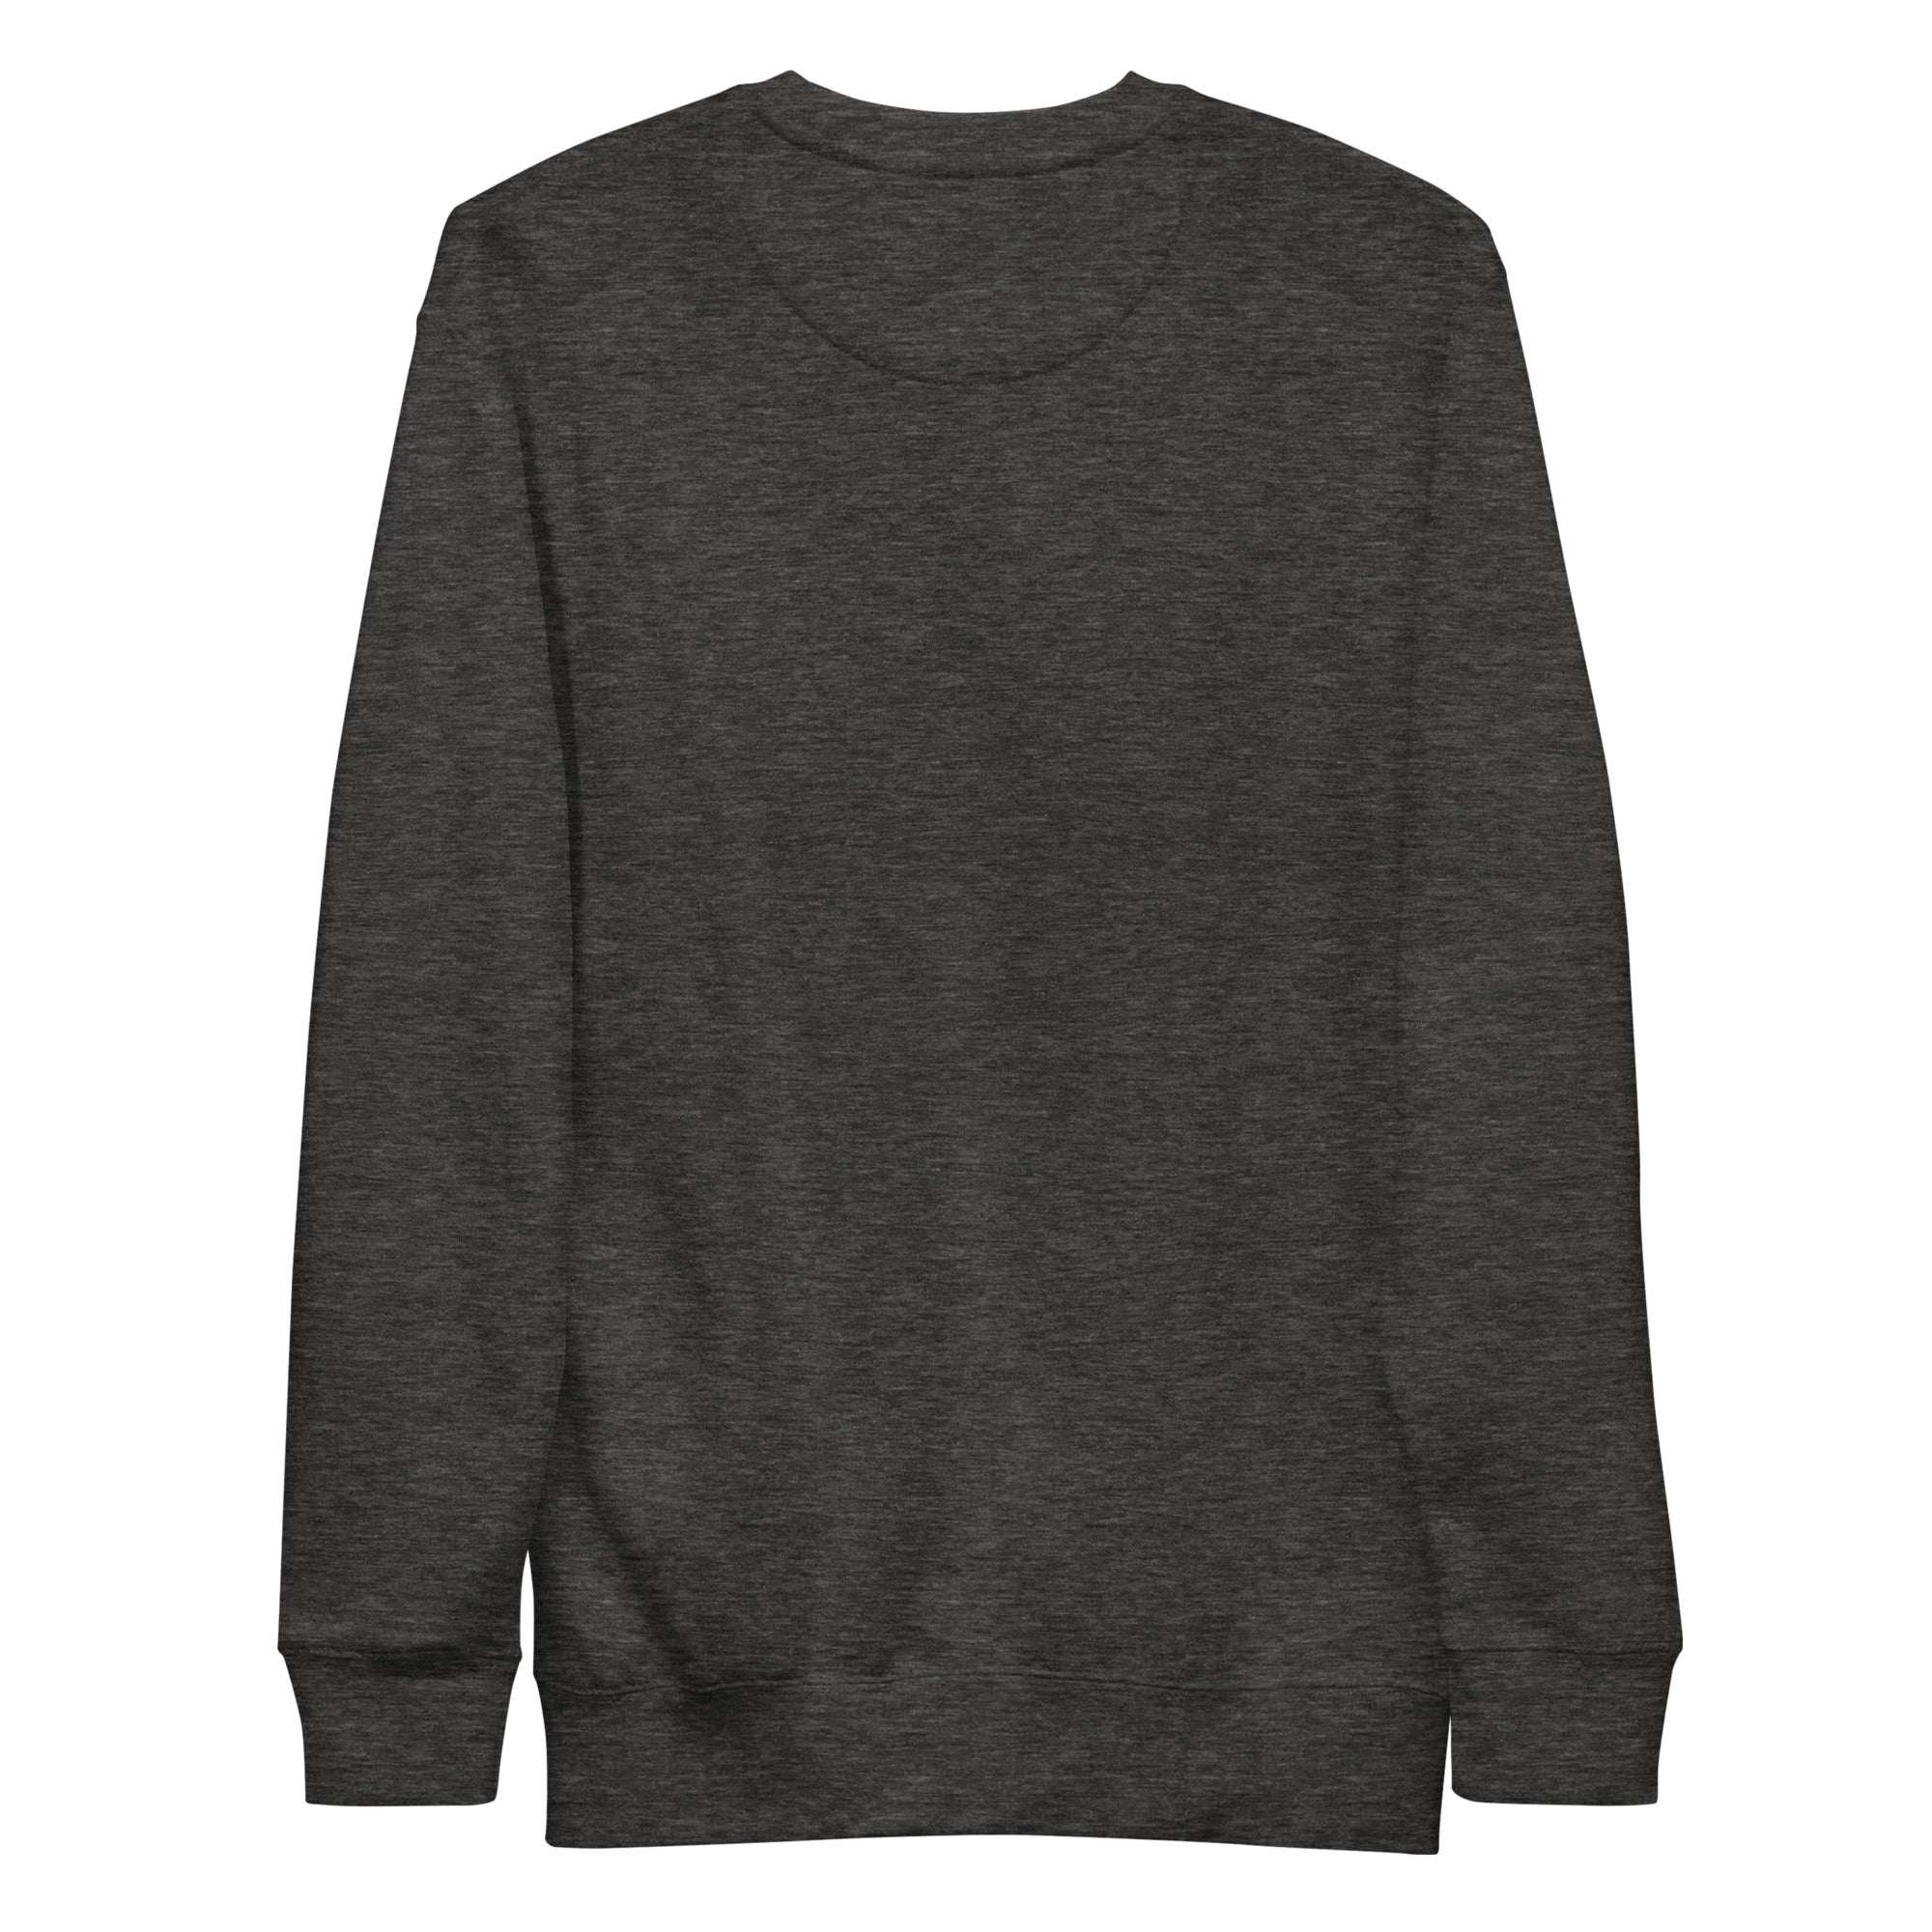 PNWDS Sweater, Premium